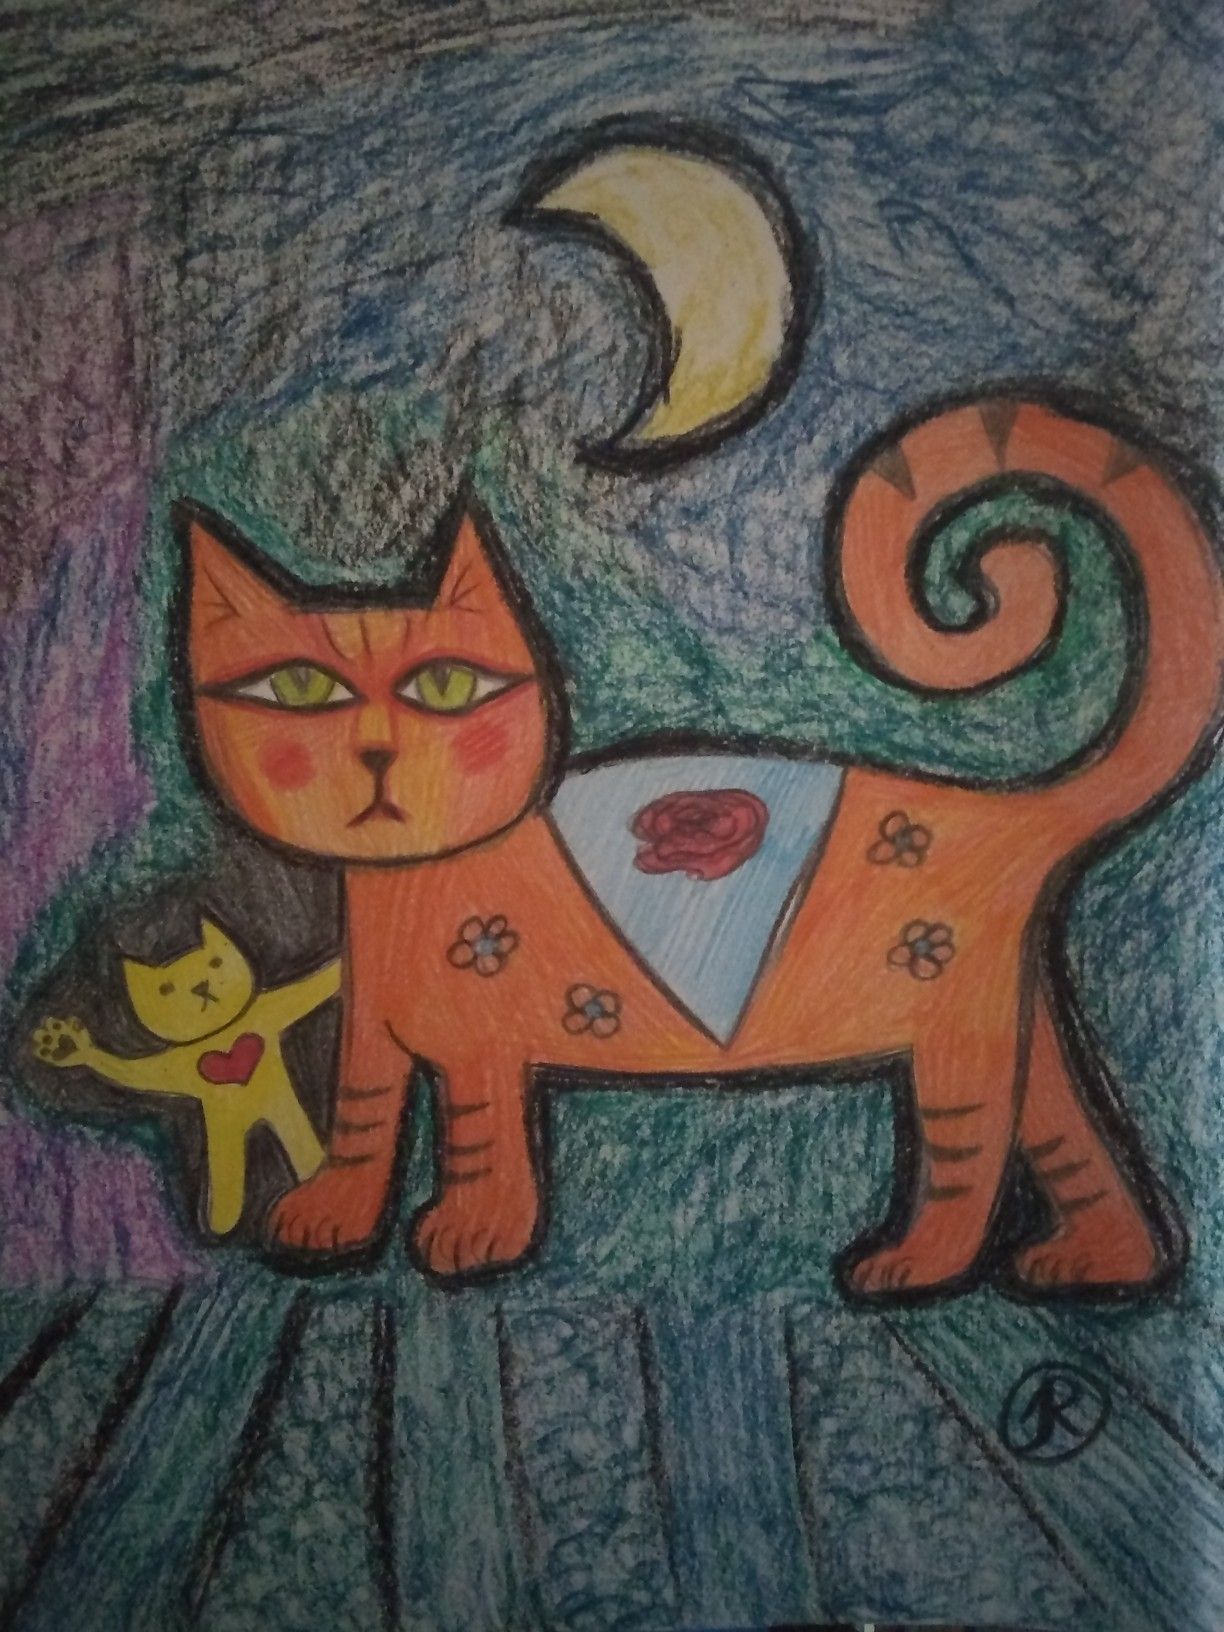 Doodle abstract cats art, oil pastels mixed media hand drawn original art